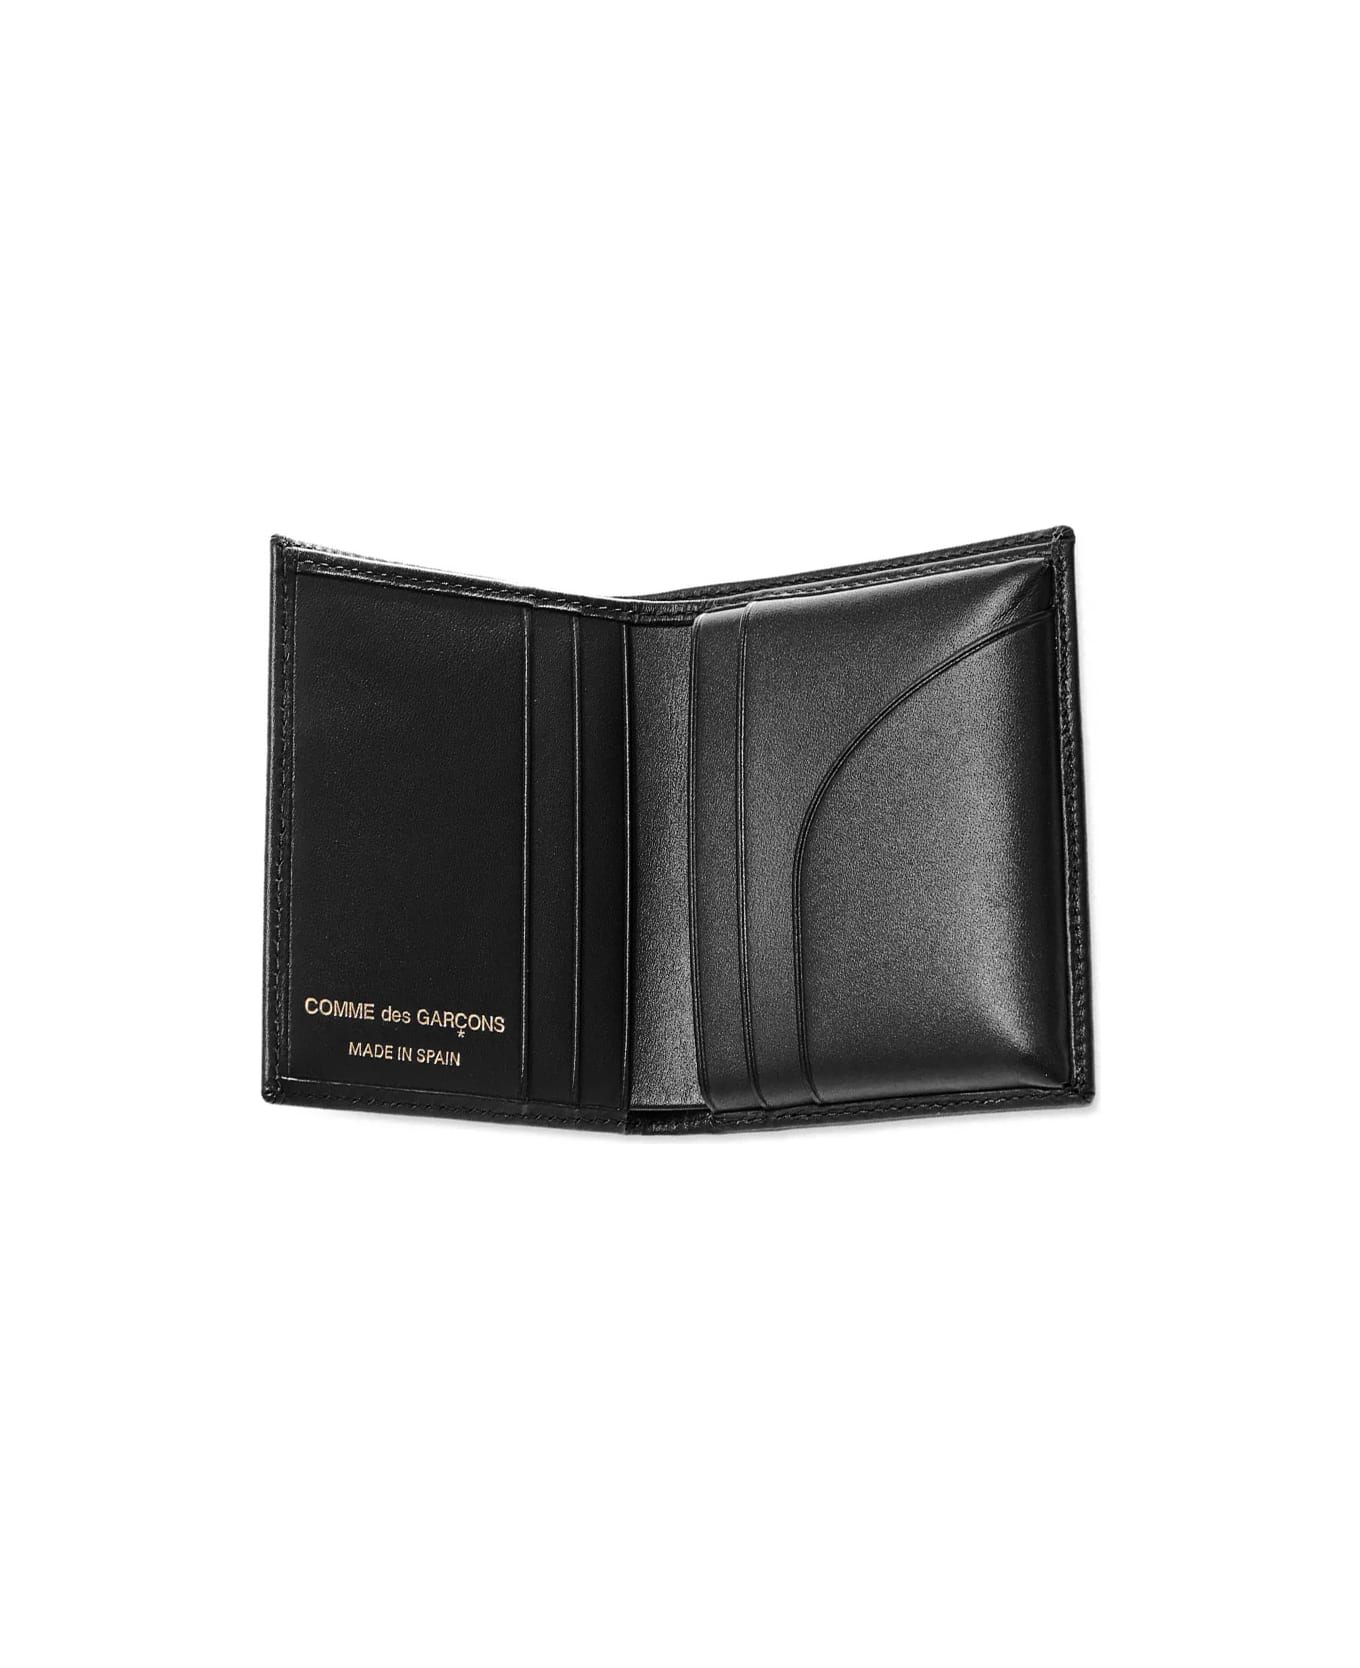 Comme des Garçons Wallet Comme Des Garcons Wallet Black Small Wallet - Black 財布